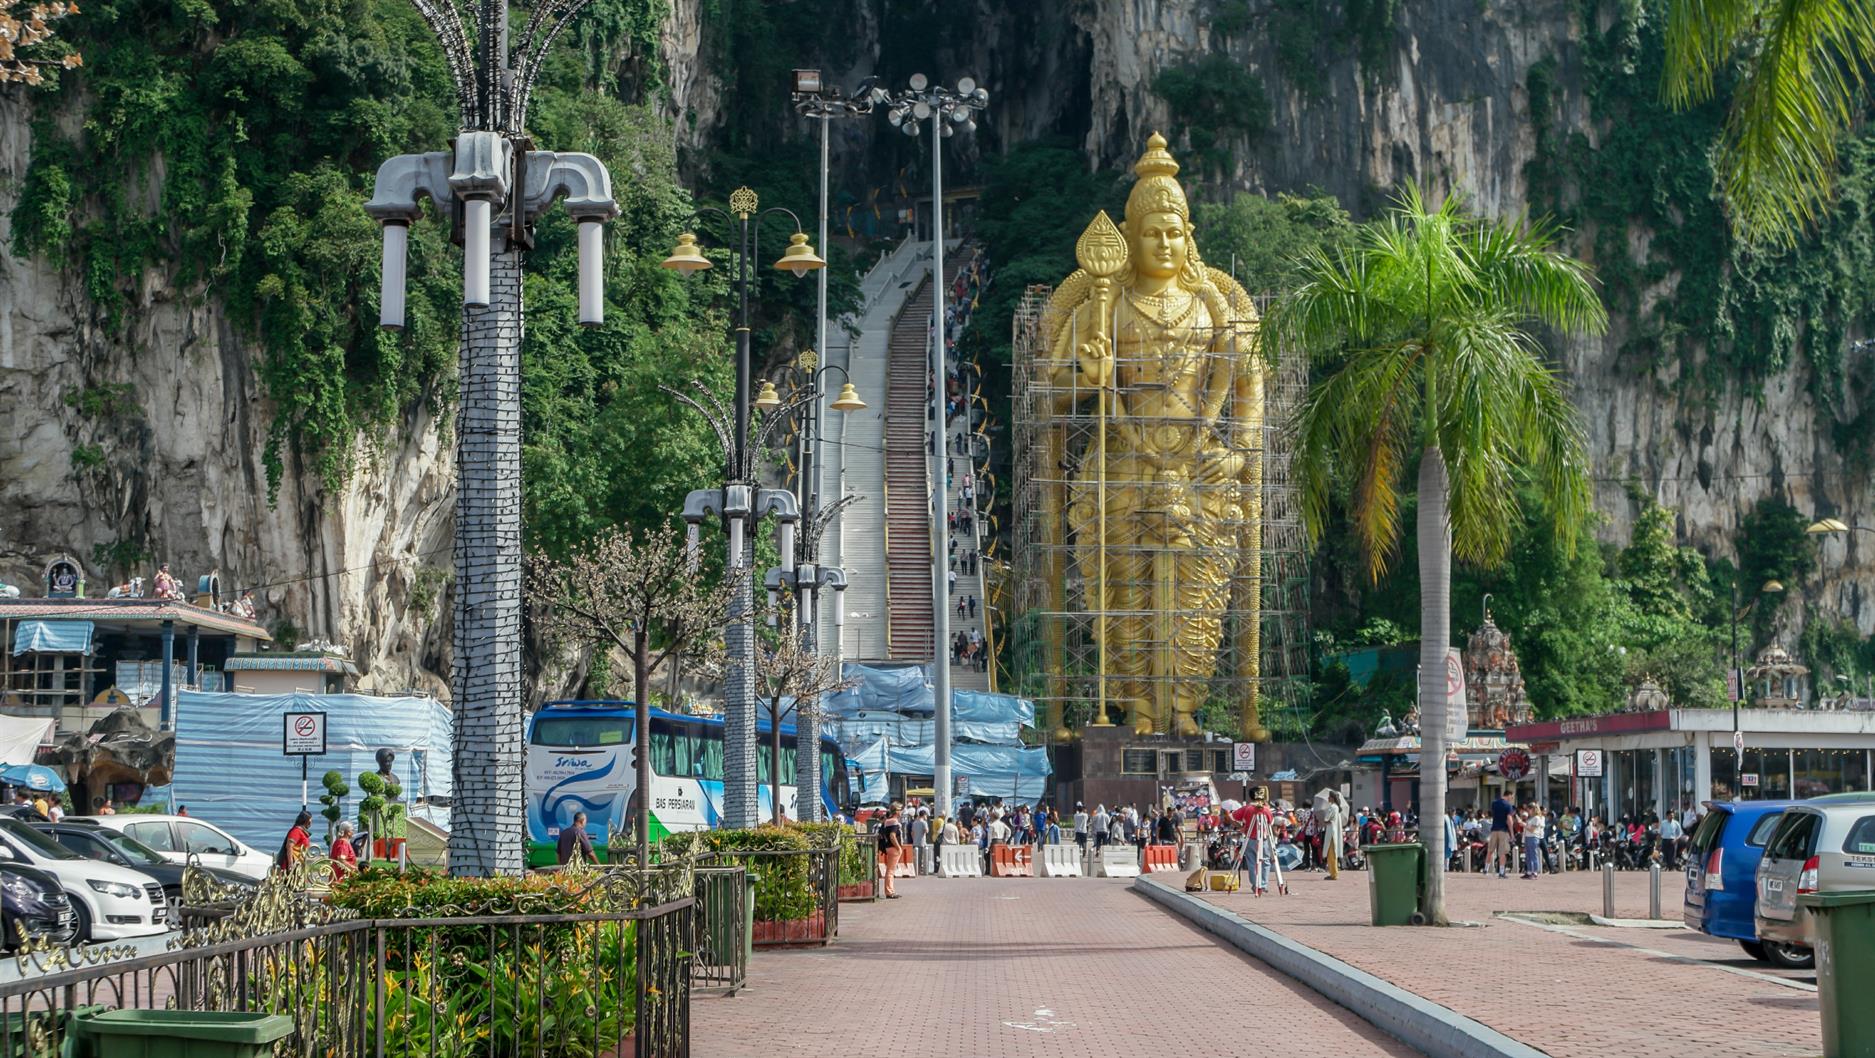 Allein schon die riesige goldene Statue am Eingang, die dem Hindu-Gott "Murugan" gewidmet ist, ist recht beeindruckend. Leider ist sie komplett von einem Baugerüst umgeben. Im Hintergrund kann man die Treppe sehen, die man benutzen muss, um in die Höhlen zu gelangen. Da ist zuerst einmal ein wenig Fitness gefragt, denn bis zur Haupthöhle, der "Cathedral Cave", muss man nicht weniger als 272 Stufen erklimmen.